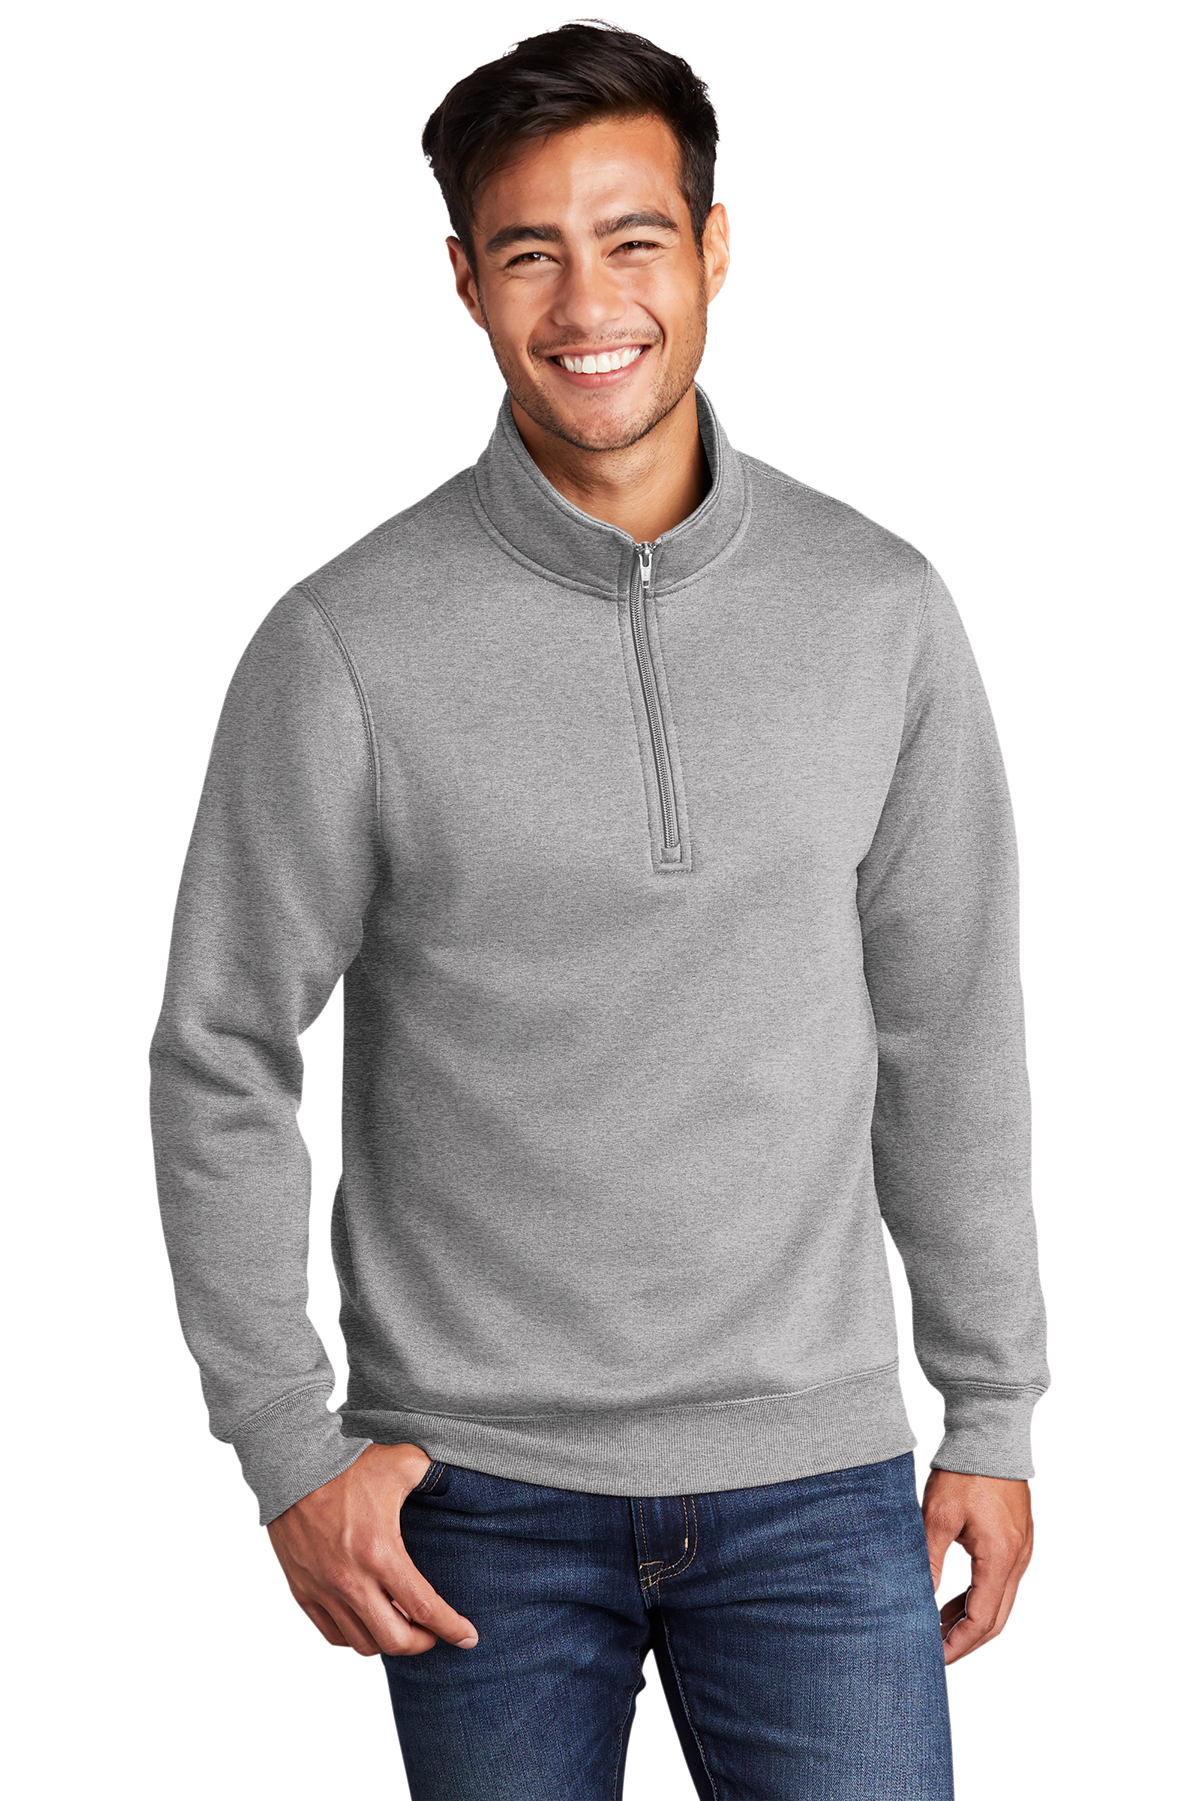 Port & Company Core Fleece 1/4-Zip Pullover Sweatshirt | Product ...